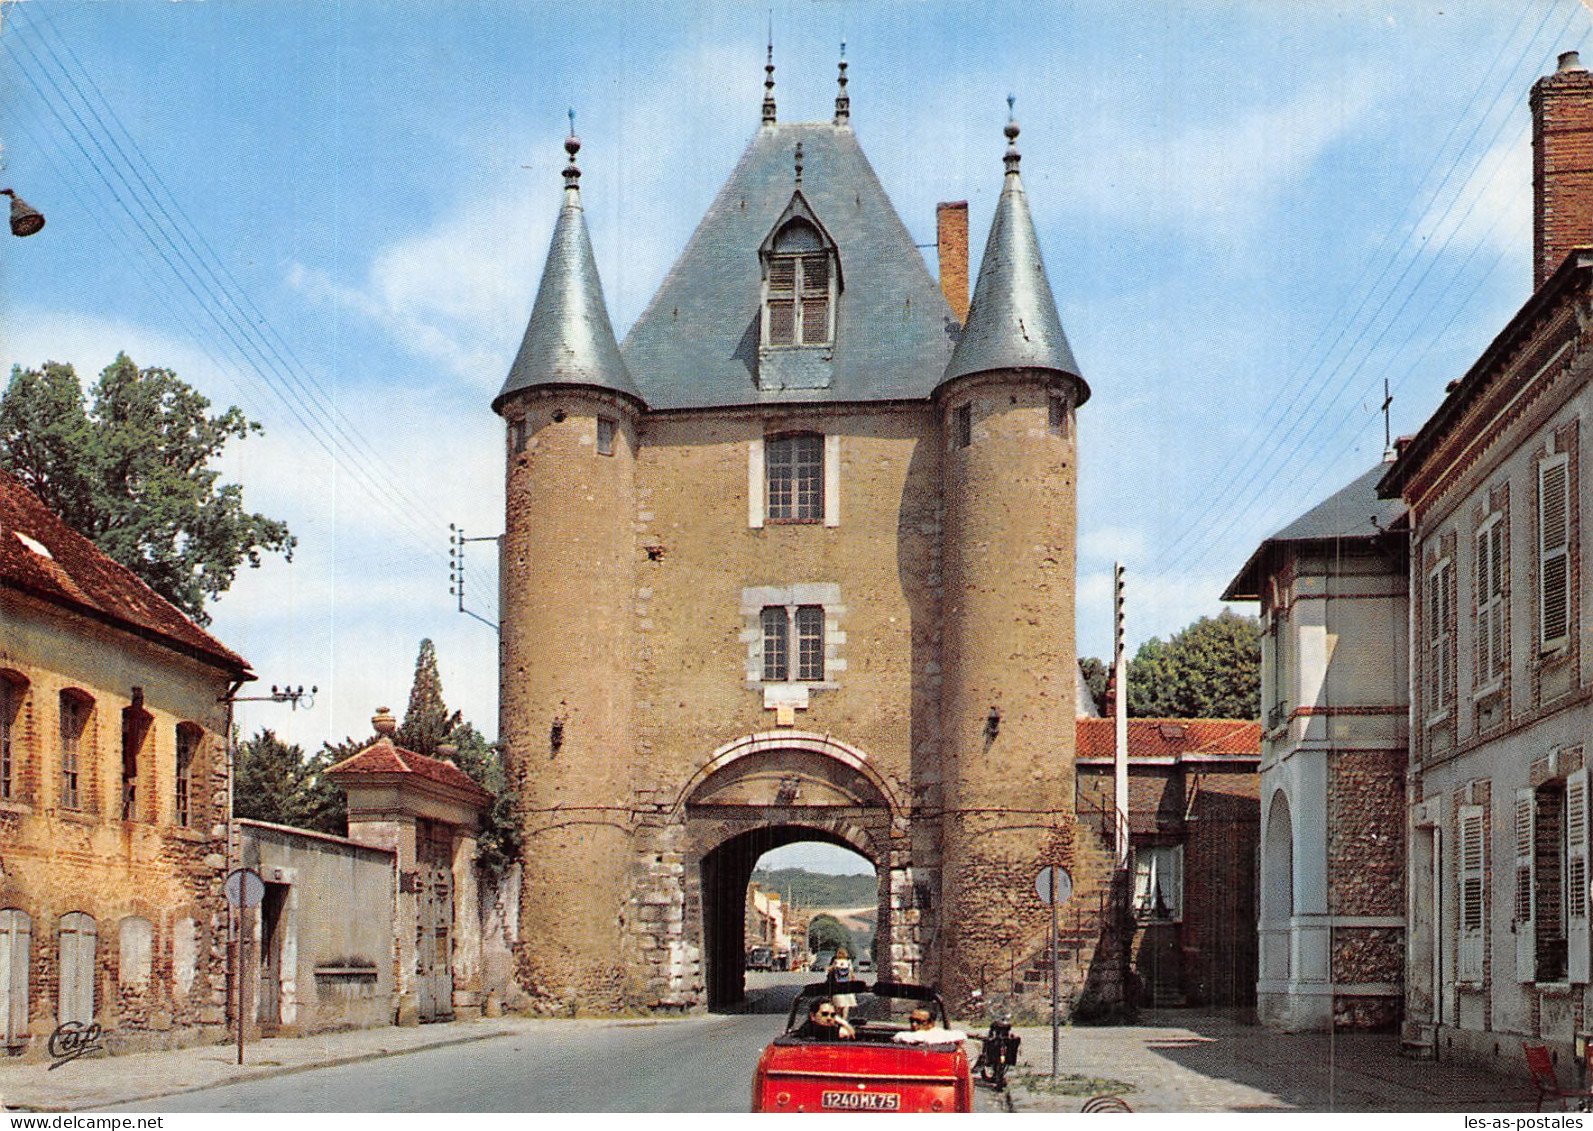 89 VILLENEUVE SUR YONNE - Villeneuve-sur-Yonne